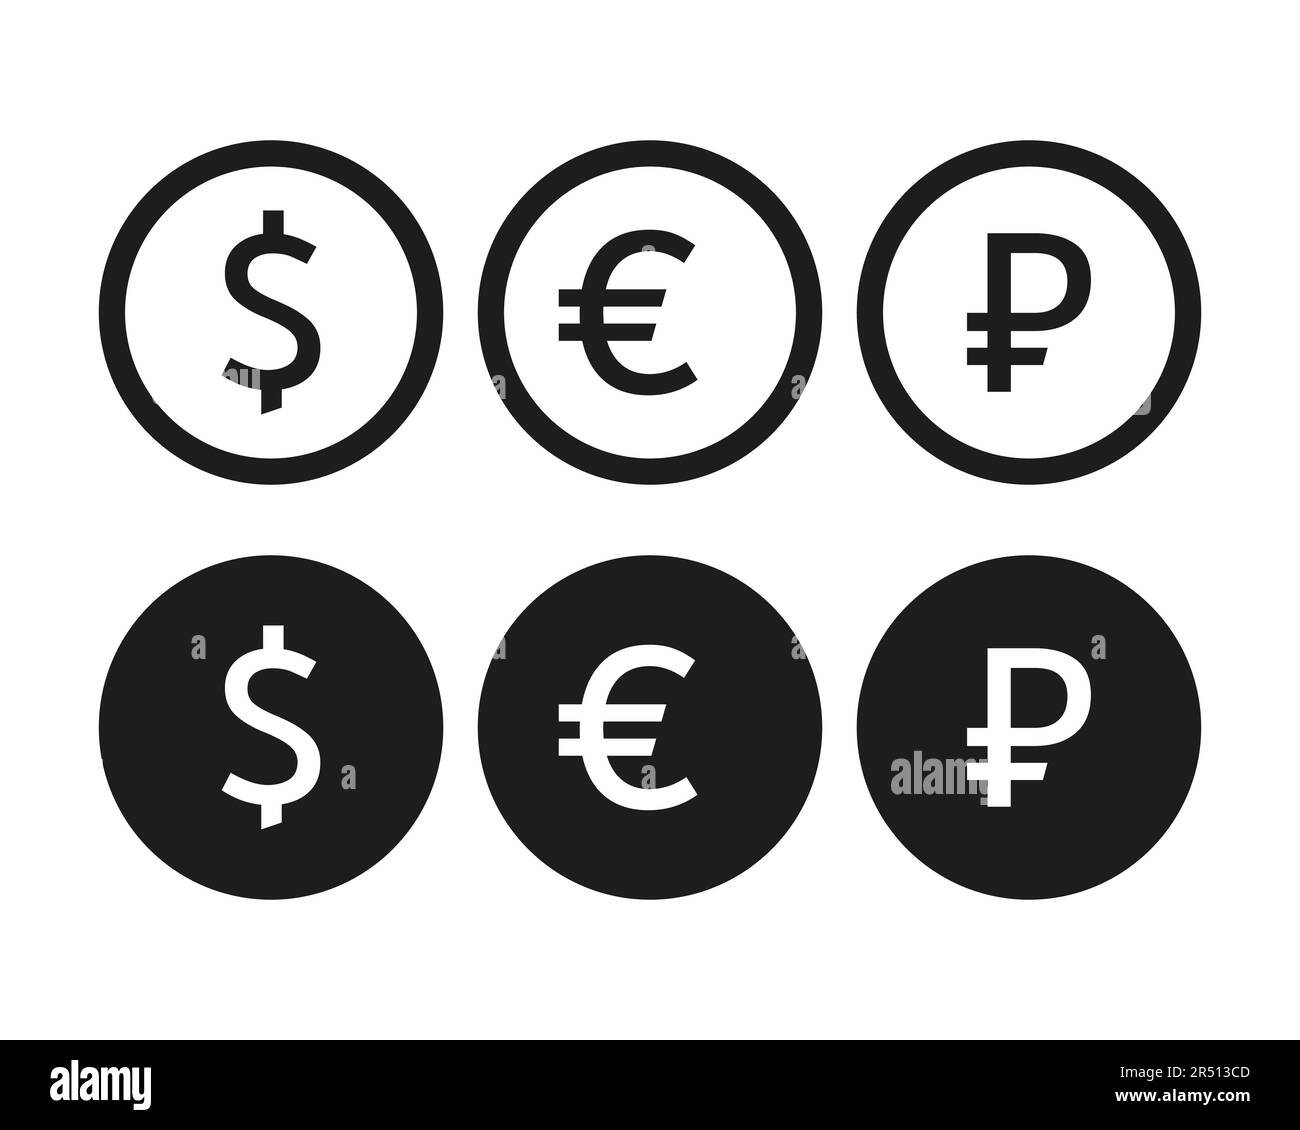 Le valute sono le forme ufficiali di denaro utilizzate in diversi paesi o regioni per le transazioni e lo scambio. Essi servono come mezzo di scambio, u Illustrazione Vettoriale